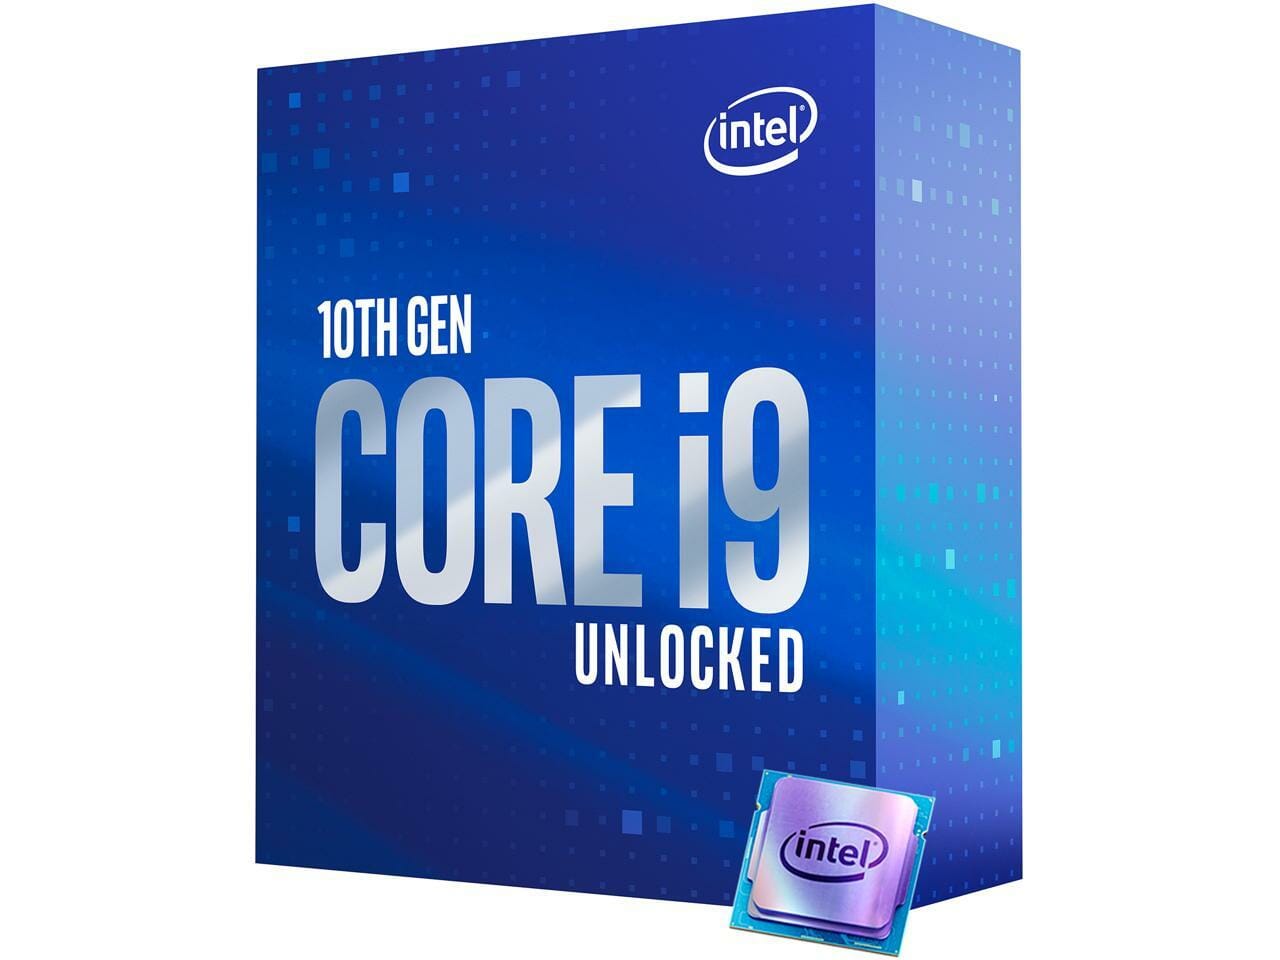 Intel 10th Gen Core i9 10850K Processor